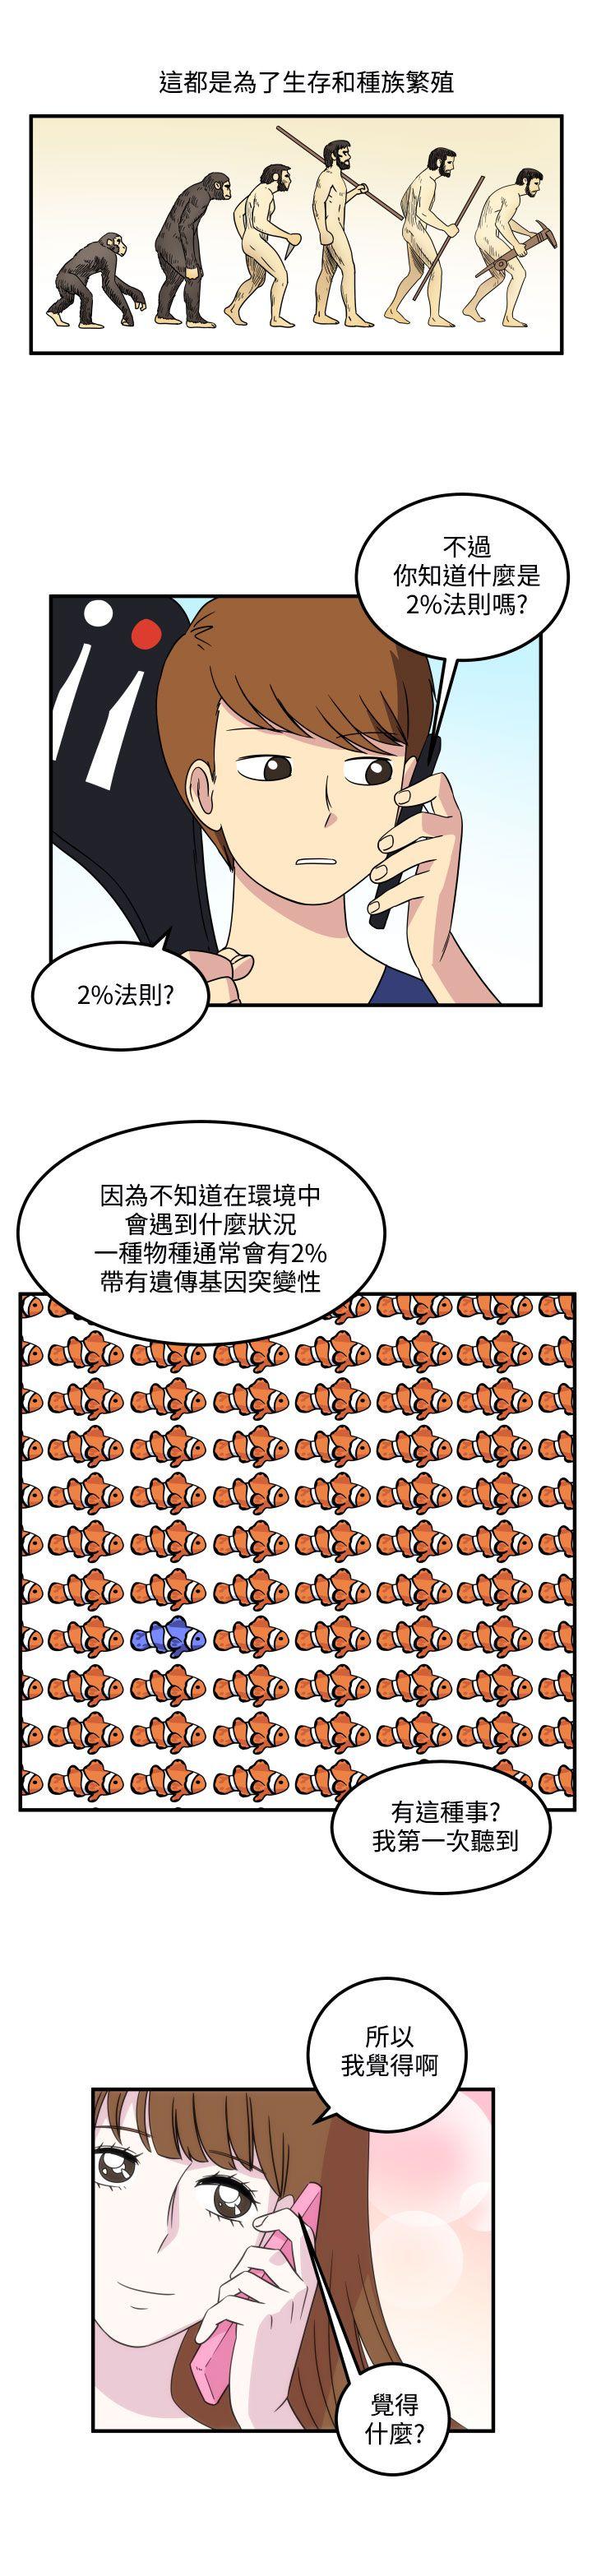 韩国污漫画 腹黑女的異想世界 第15话 3